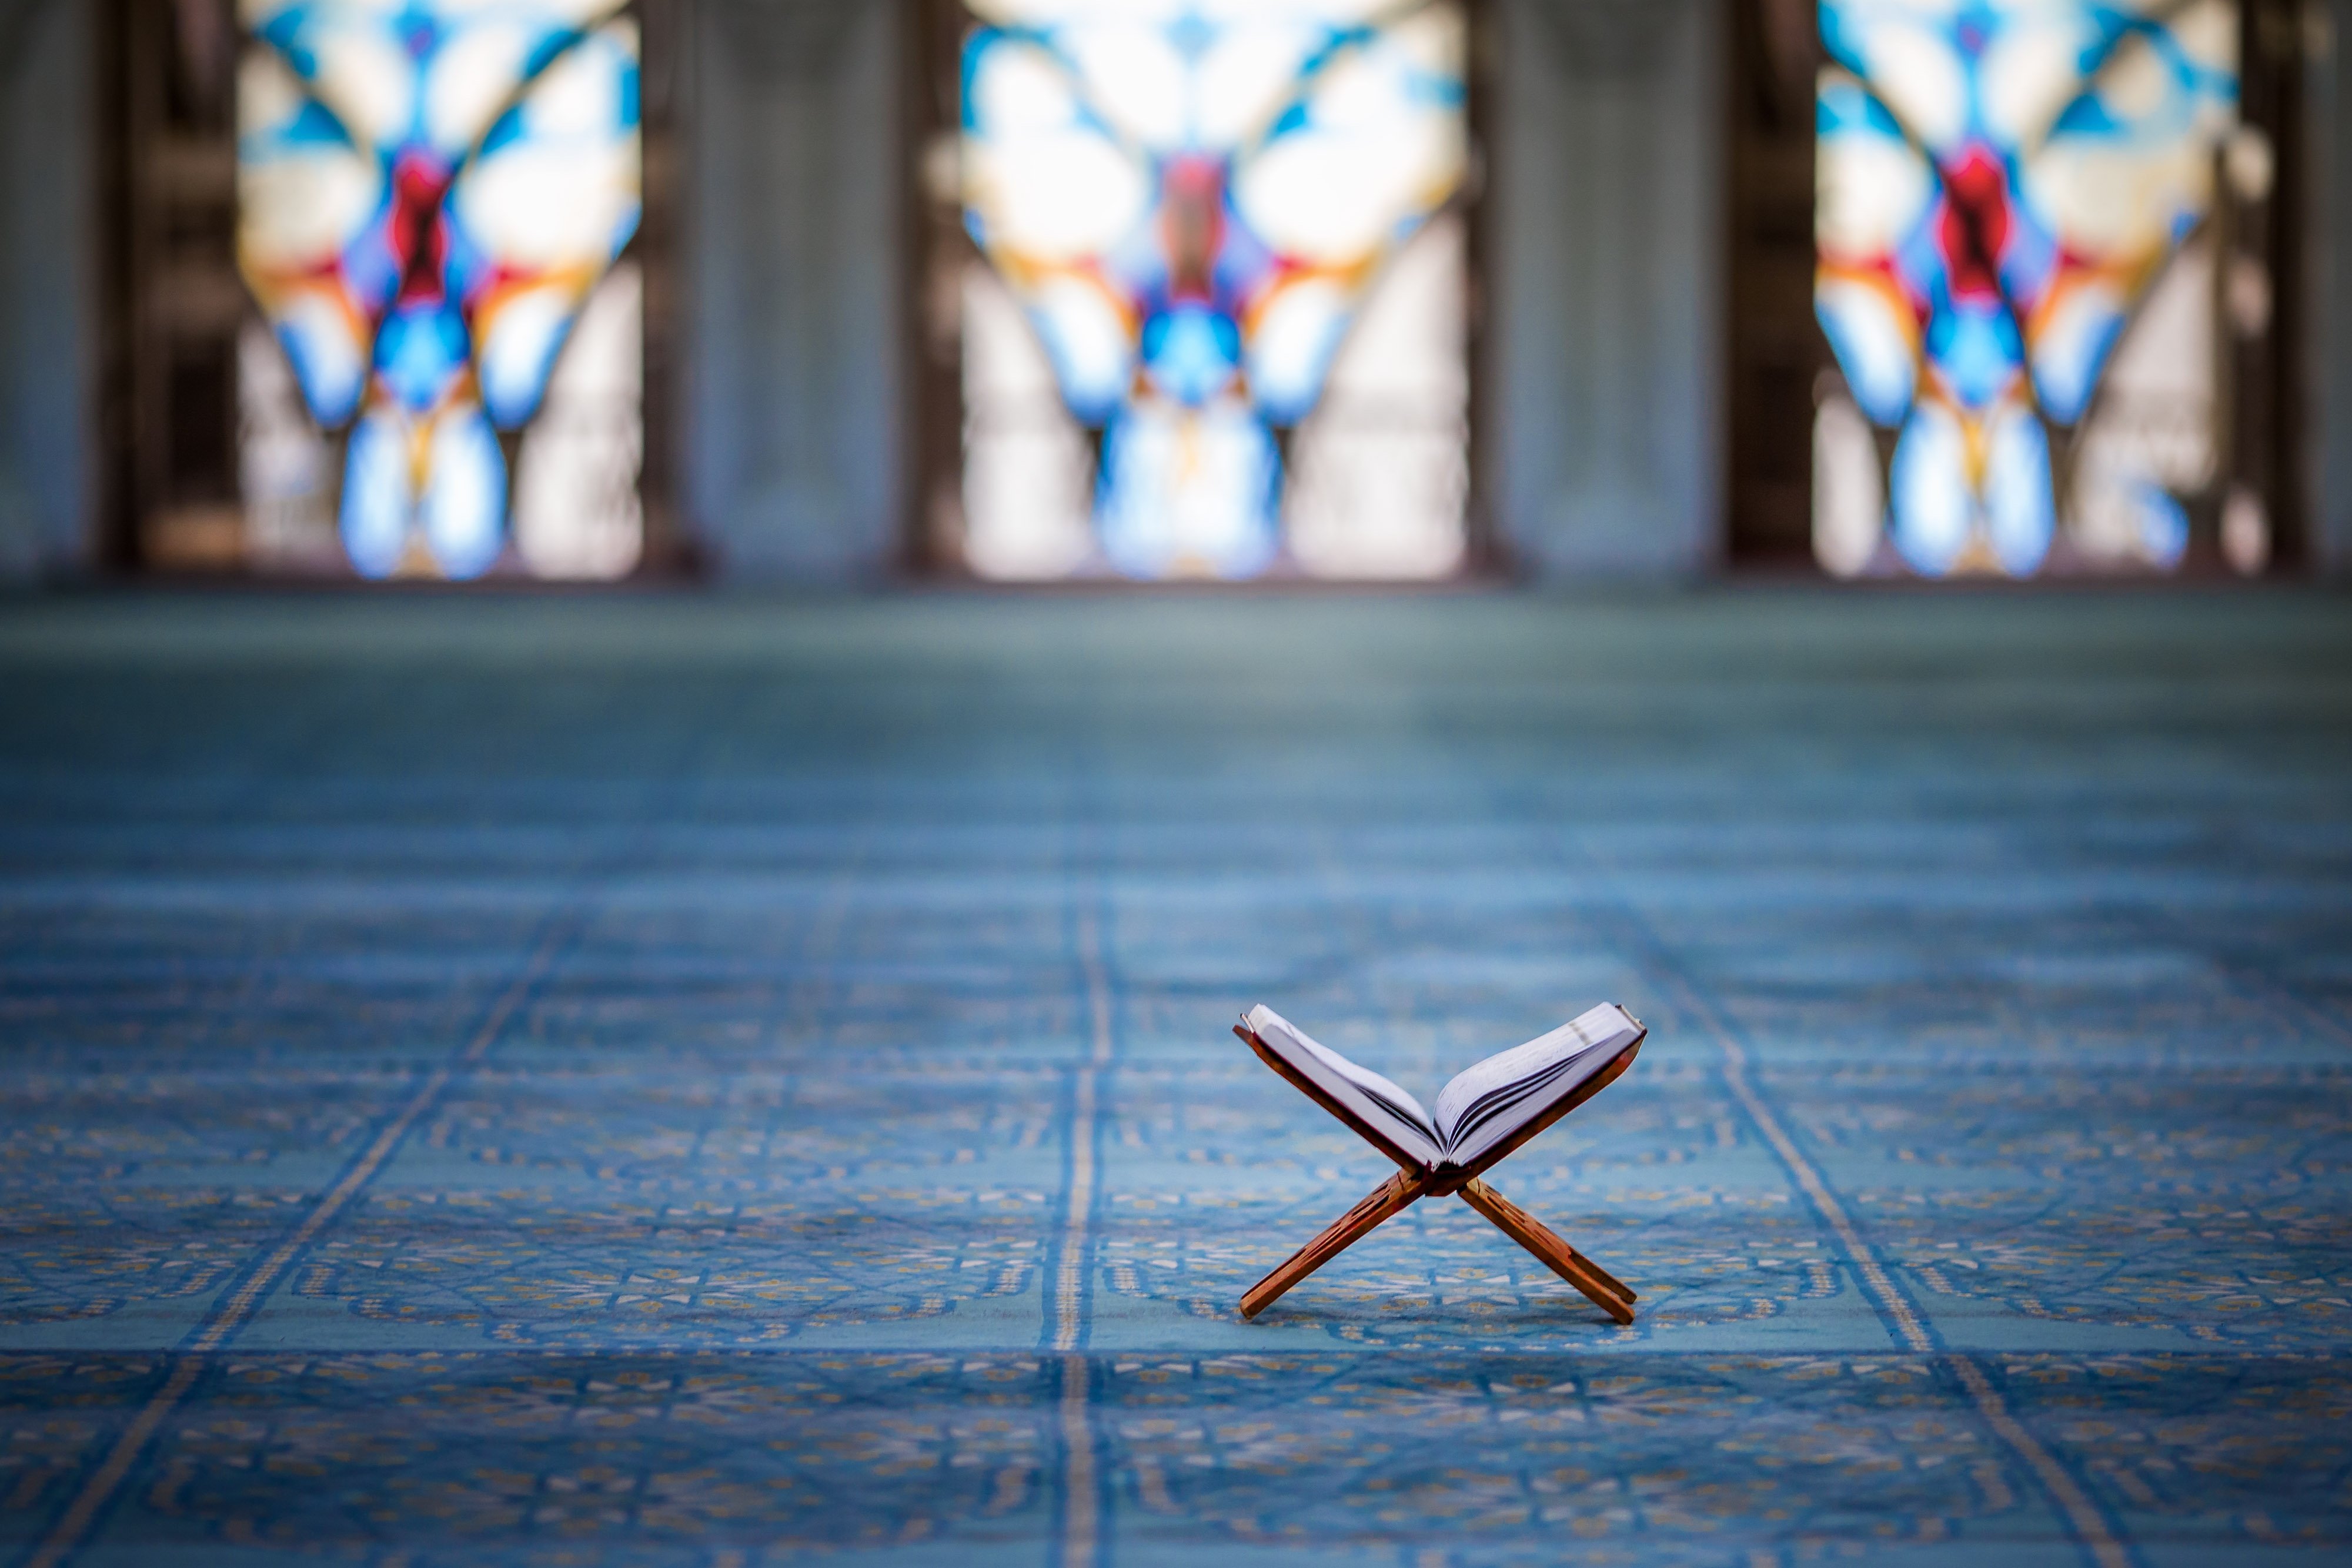 Berakhirnya Ramadhan: Memperkuat Iman dengan Berkah Lailatul Qadr